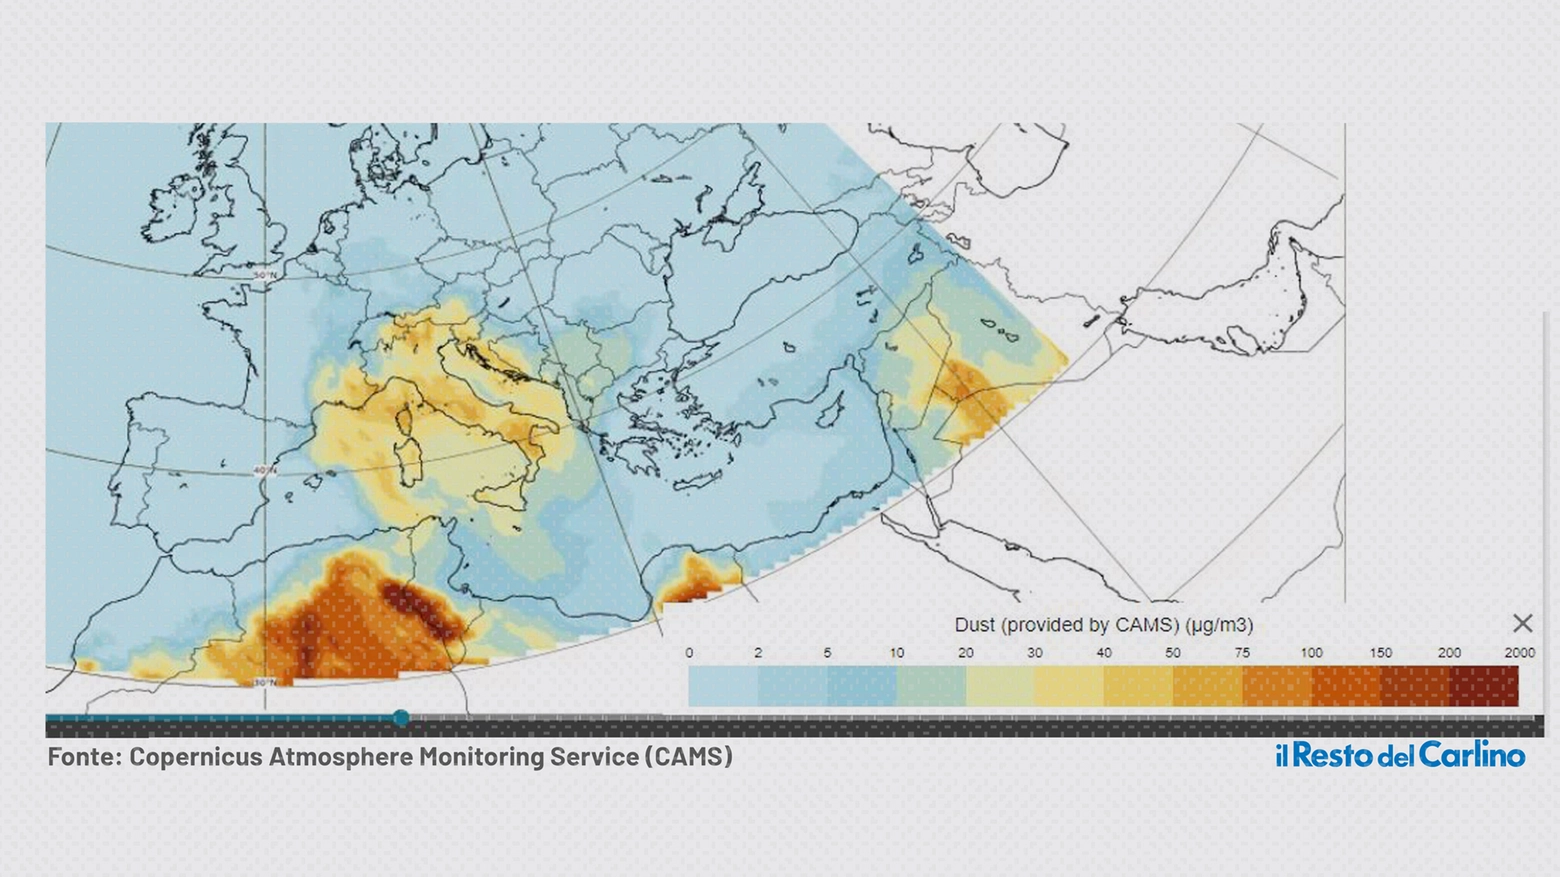 La polvere arrivata dal deserto del Sahara che ha 'ingiallito' il cielo dell'Italia (fonte Copernicus Atmosphere Monitoring Service - CAMS)